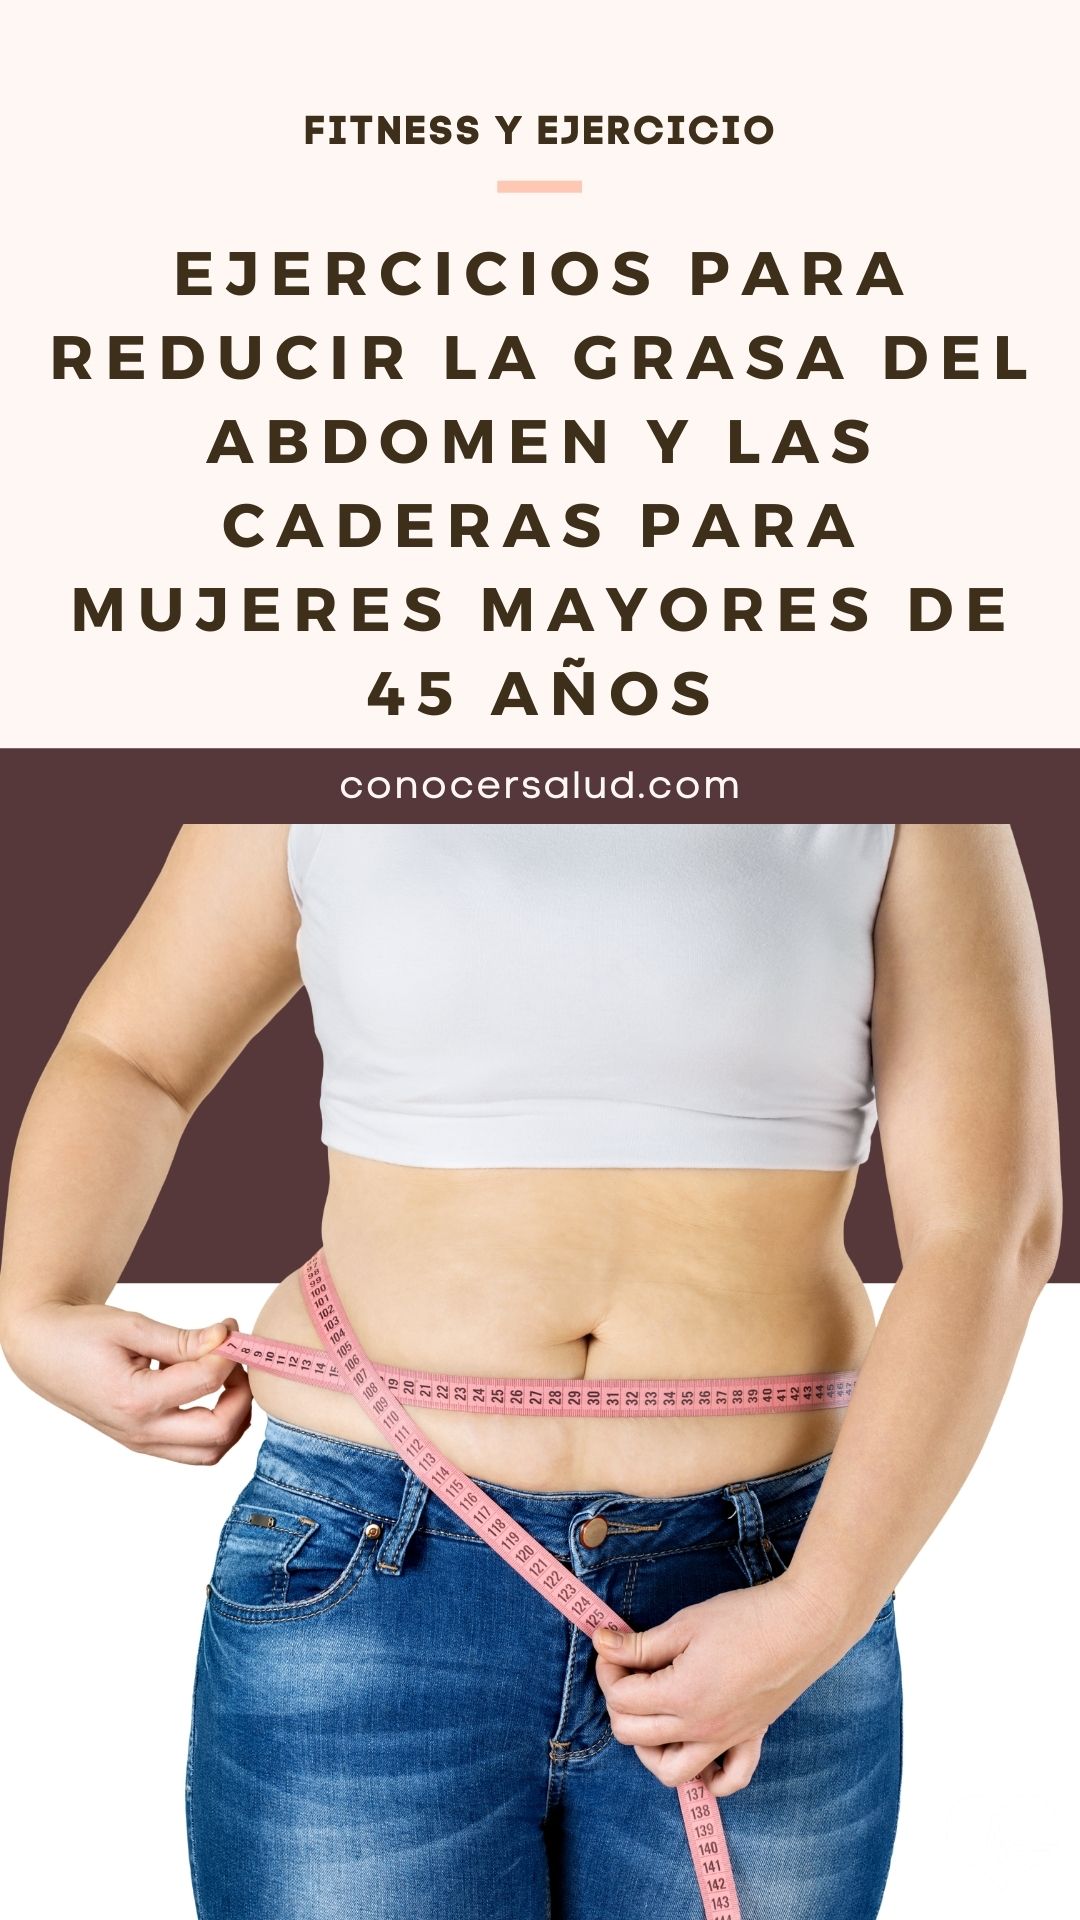 Ejercicios para reducir la grasa del abdomen y las caderas para mujeres mayores de 45 años